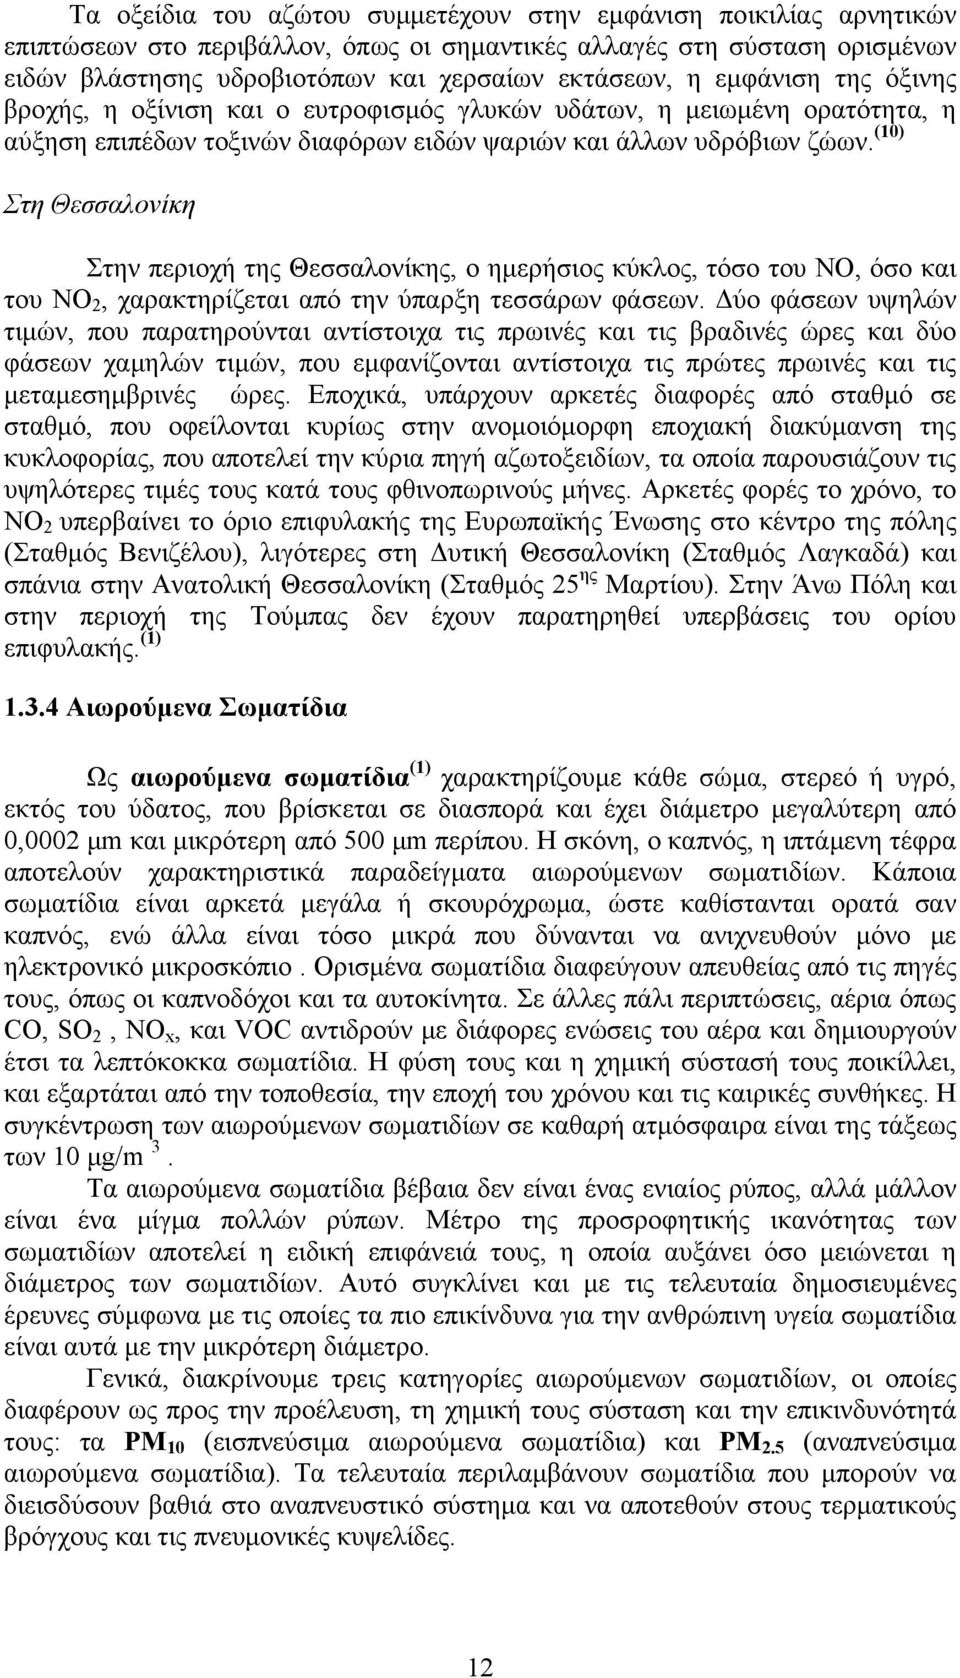 (10) Στη Θεσσαλονίκη Στην περιοχή της Θεσσαλονίκης, ο ημερήσιος κύκλος, τόσο του ΝΟ, όσο και του ΝΟ 2, χαρακτηρίζεται από την ύπαρξη τεσσάρων φάσεων.